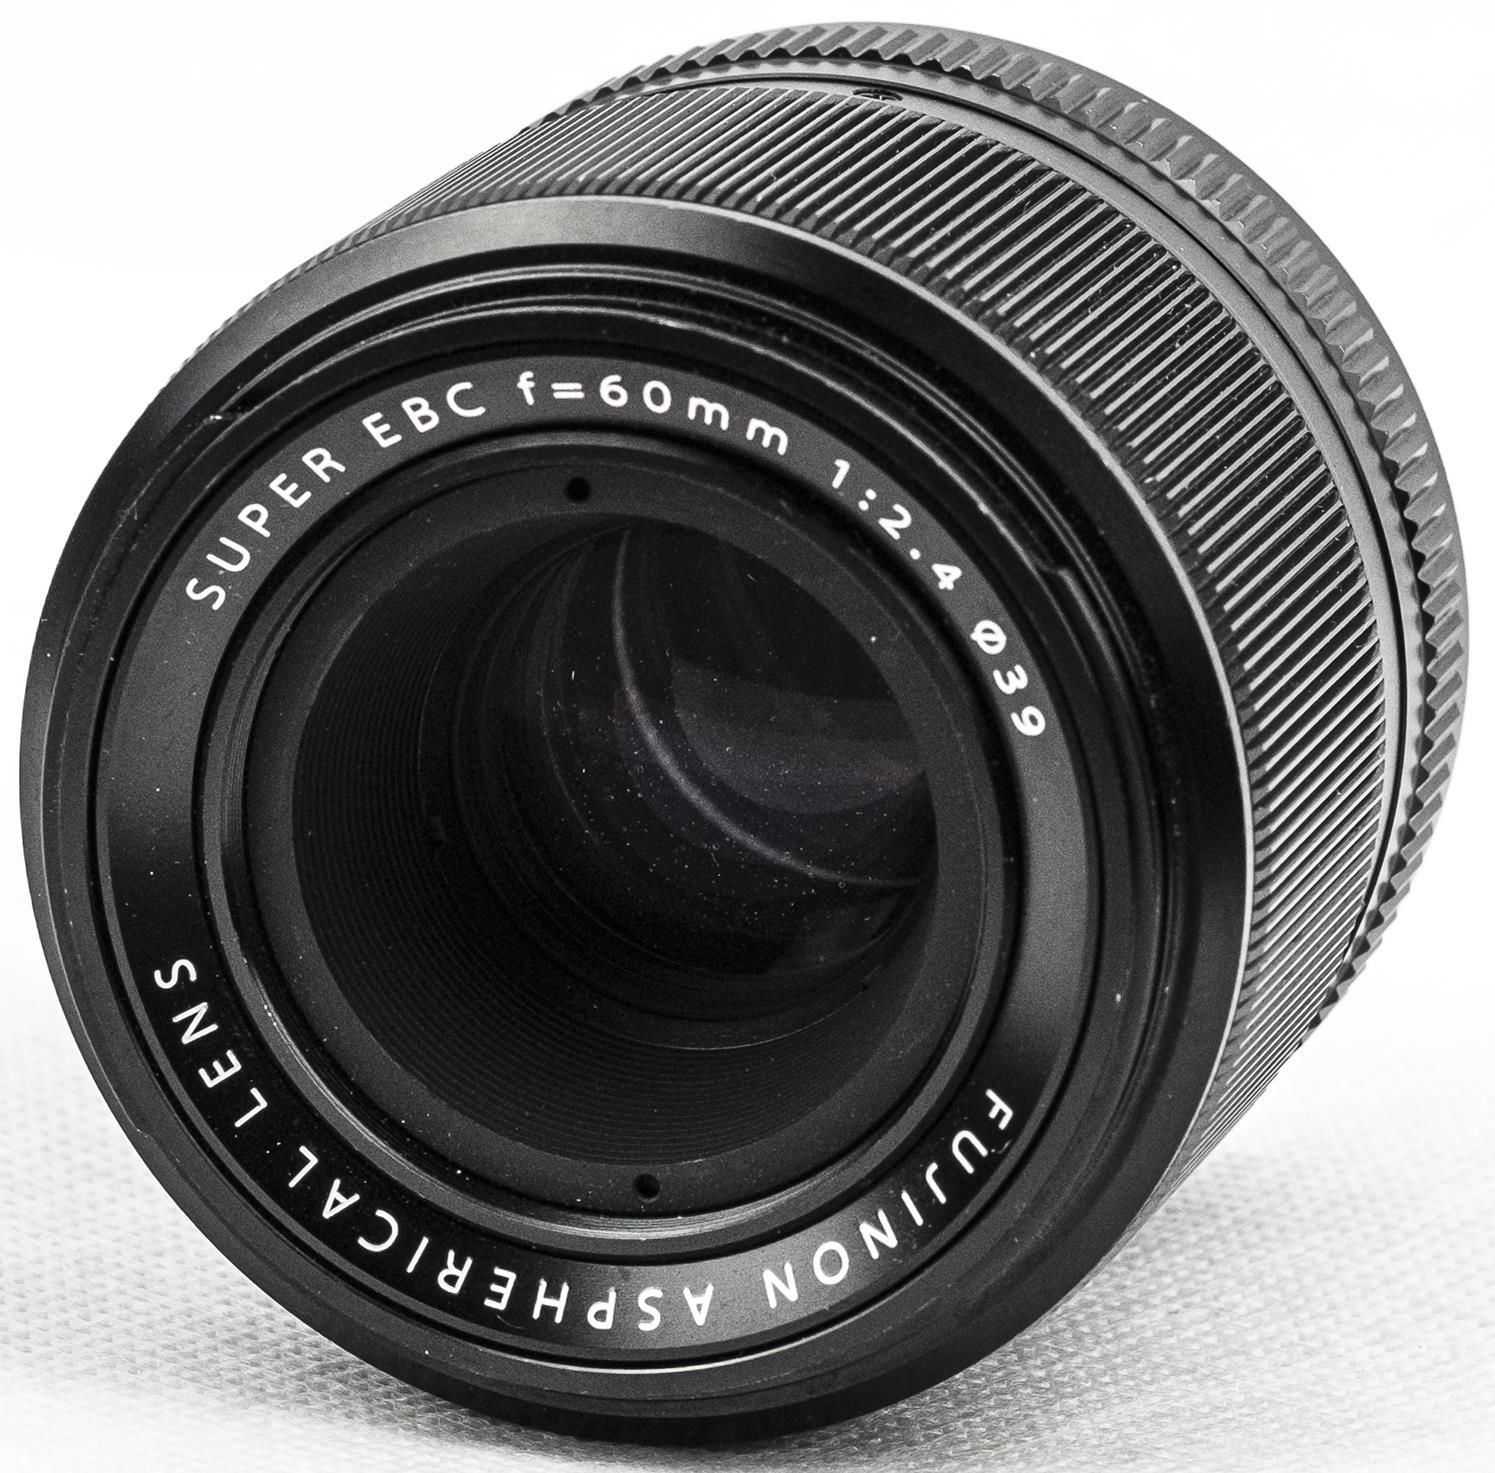 Объектив Fujifilm XF 60mm F24 R Macro - подробные характеристики обзоры видео фото Цены в интернет-магазинах где можно купить объектив Fujifilm XF 60mm F24 R Macro